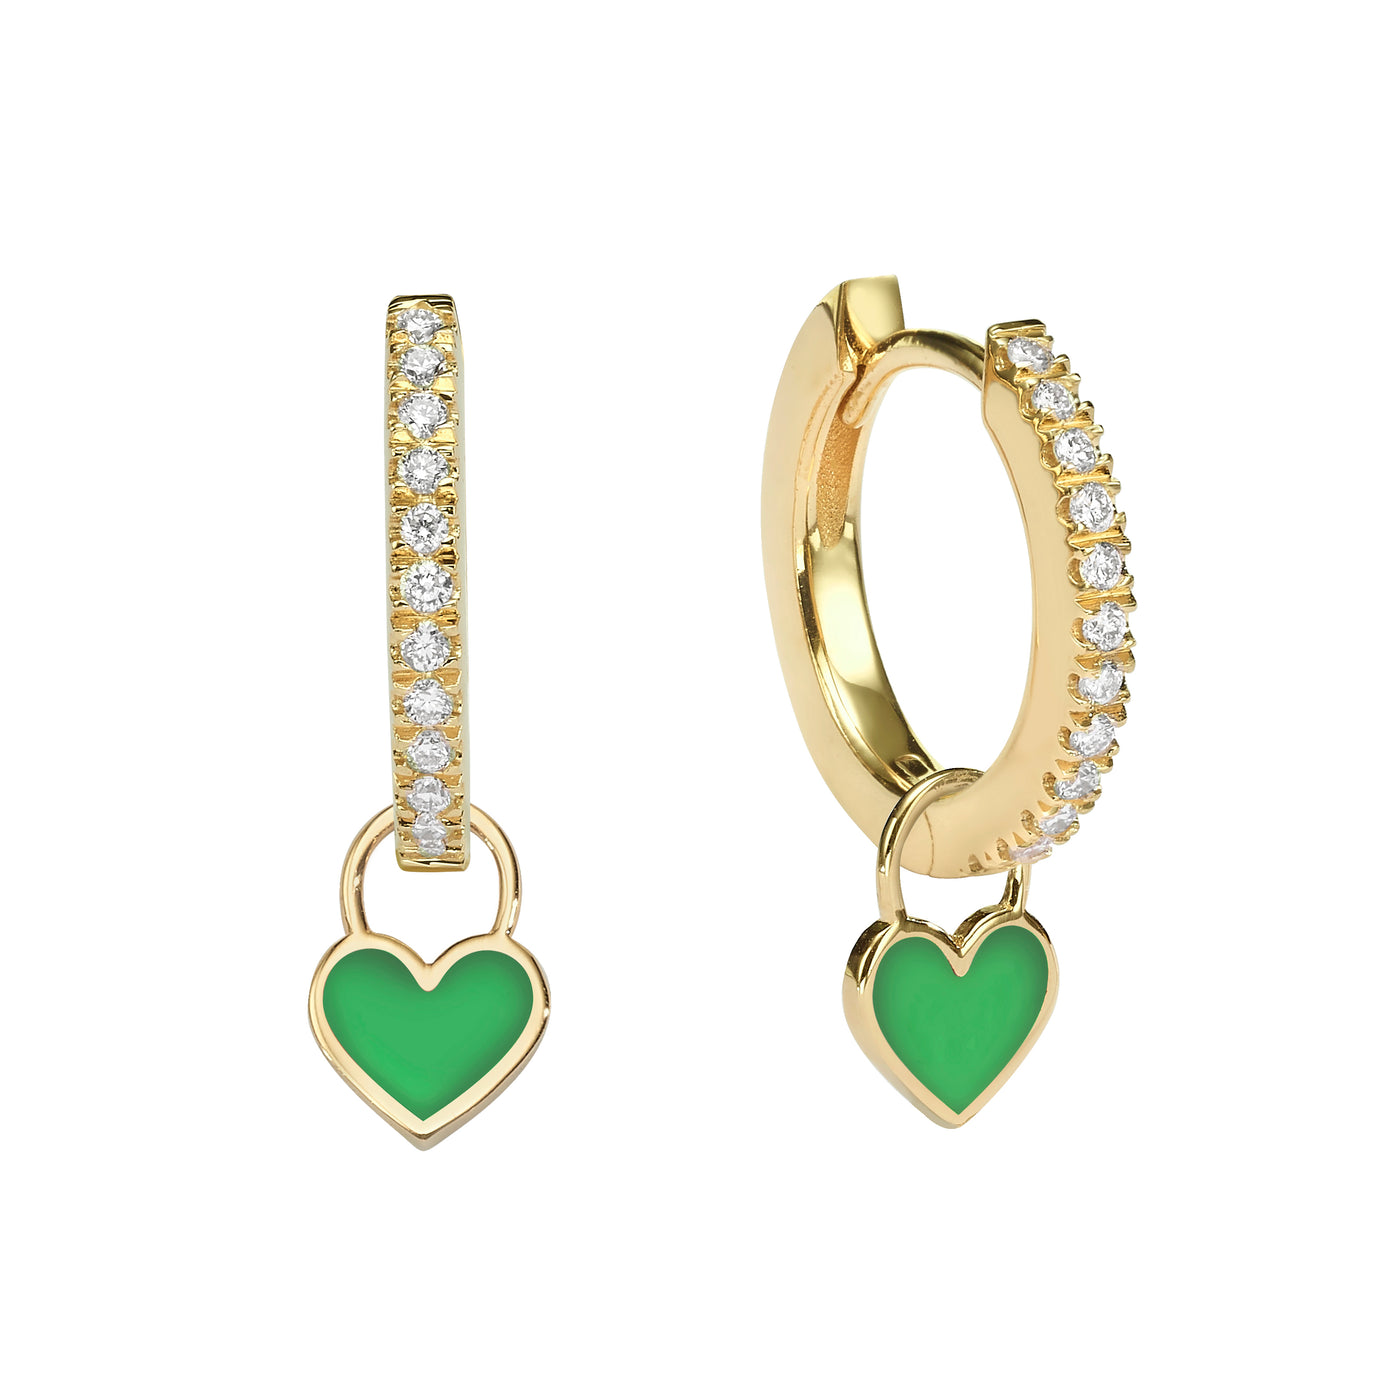 Midi Gypsy hearts earrings- Green